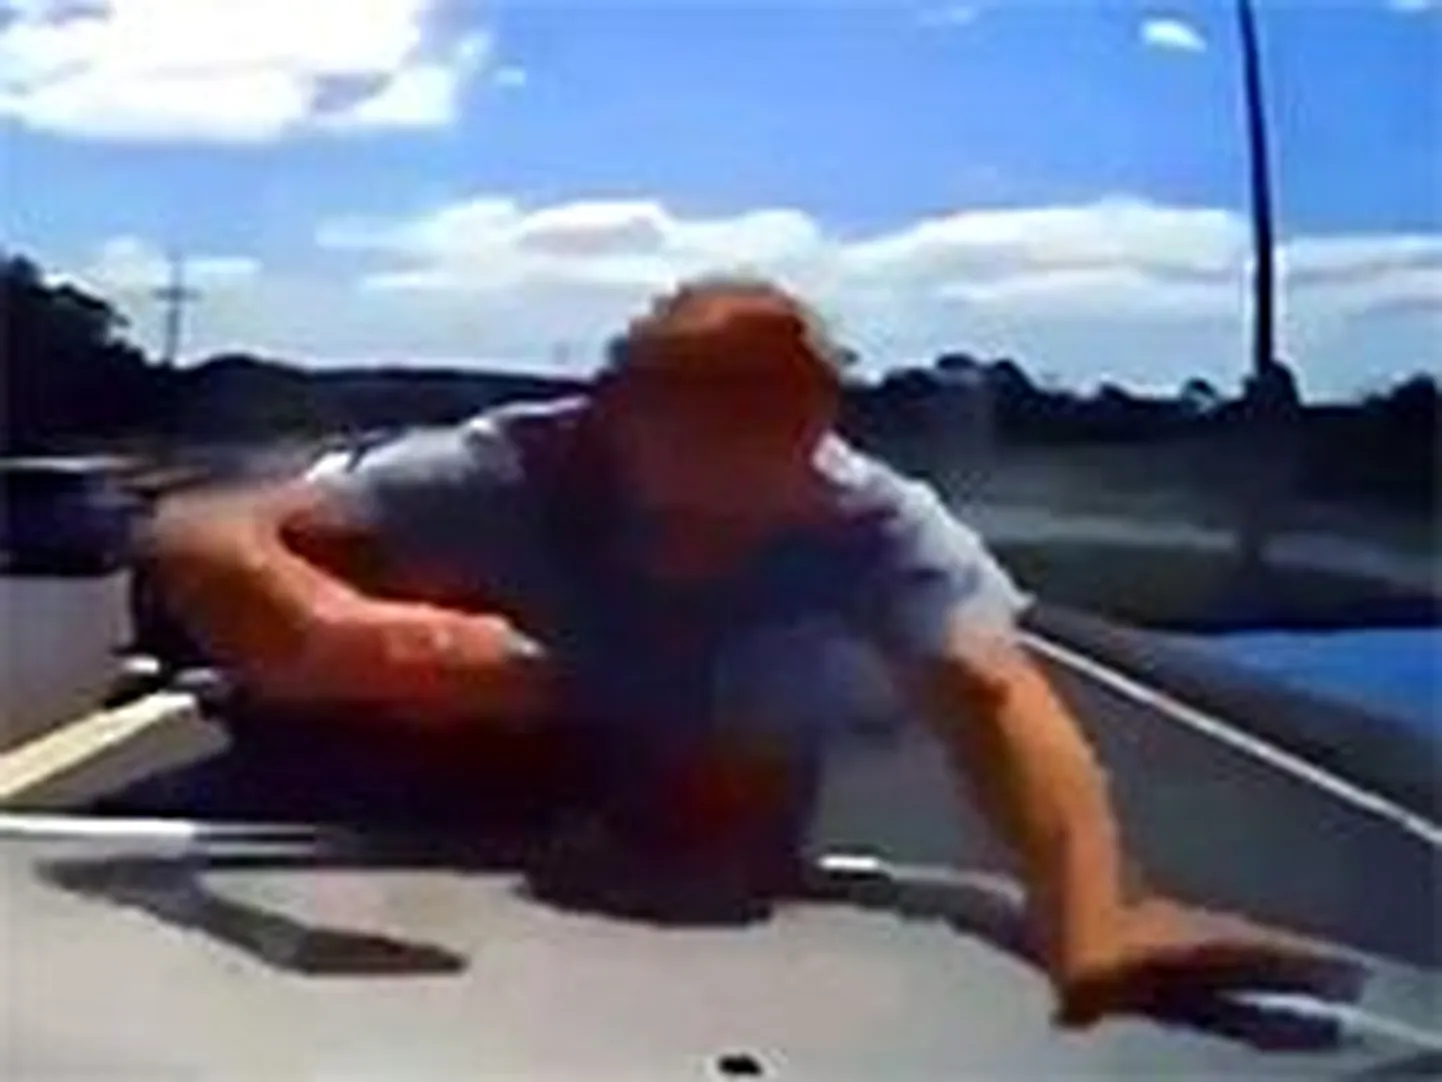 Безумец из Австралии загнал на трассе водителя и кулаками изуродовал его машину.